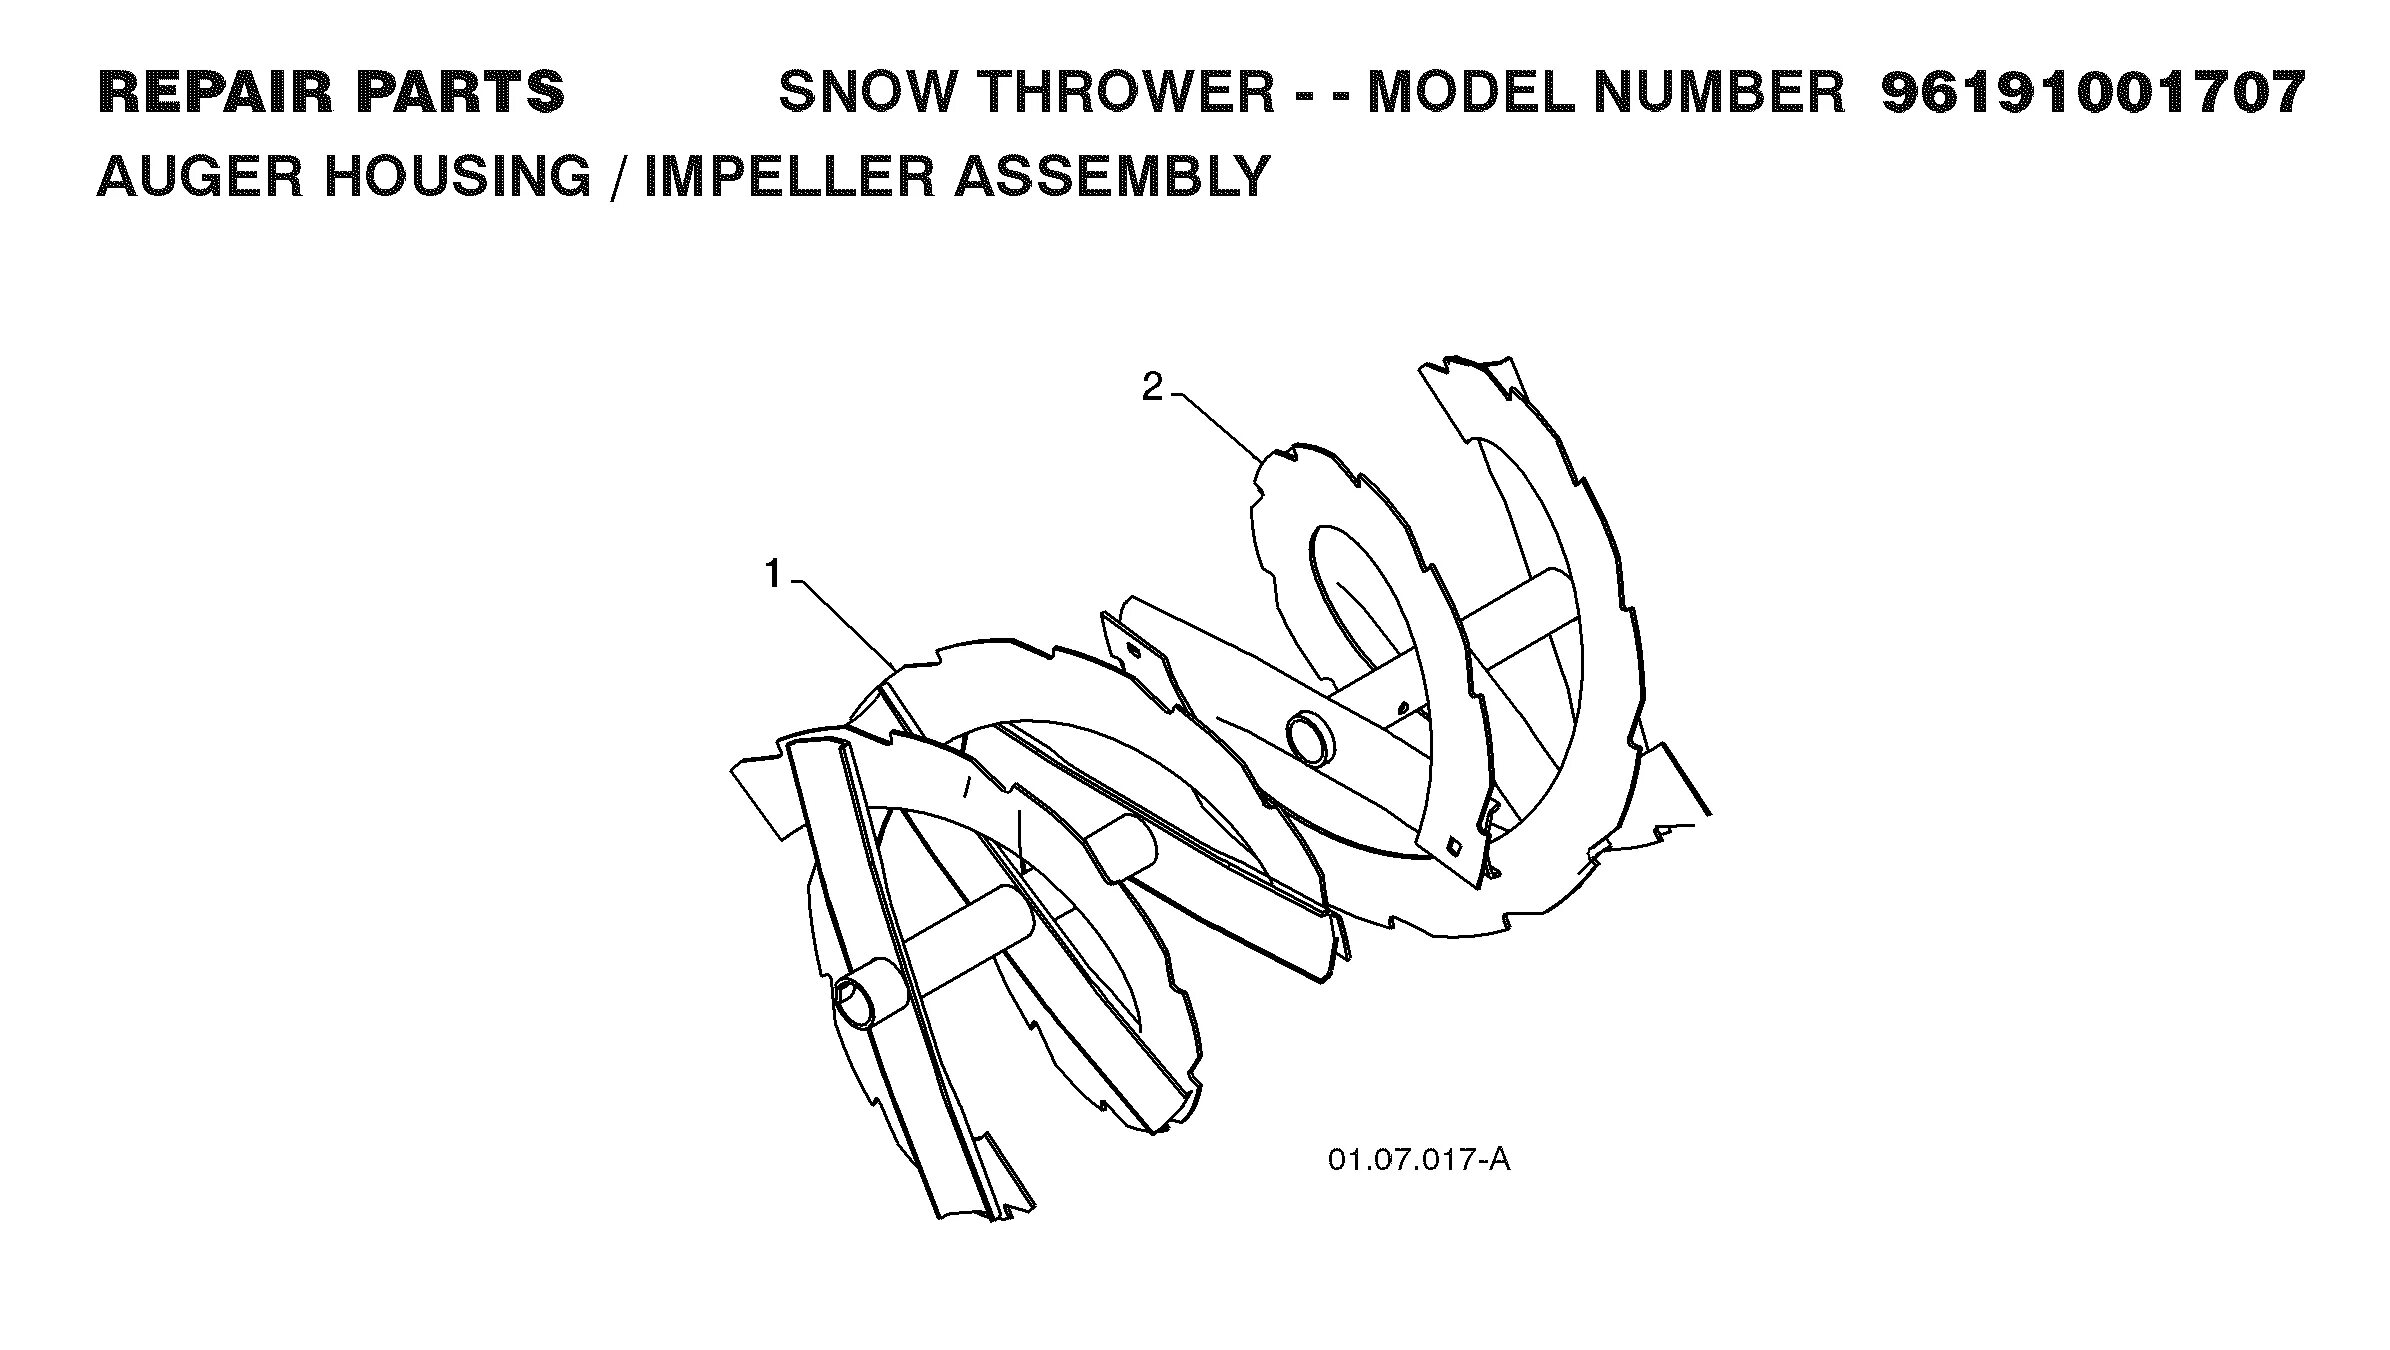 Схема шнека снегоуборщика. Снегоочиститель из триммера. Шнек для снегоуборщика своими руками чертежи. Снегоотбрасыватель своими руками чертежи. Снегоуборщик обороты двигателя